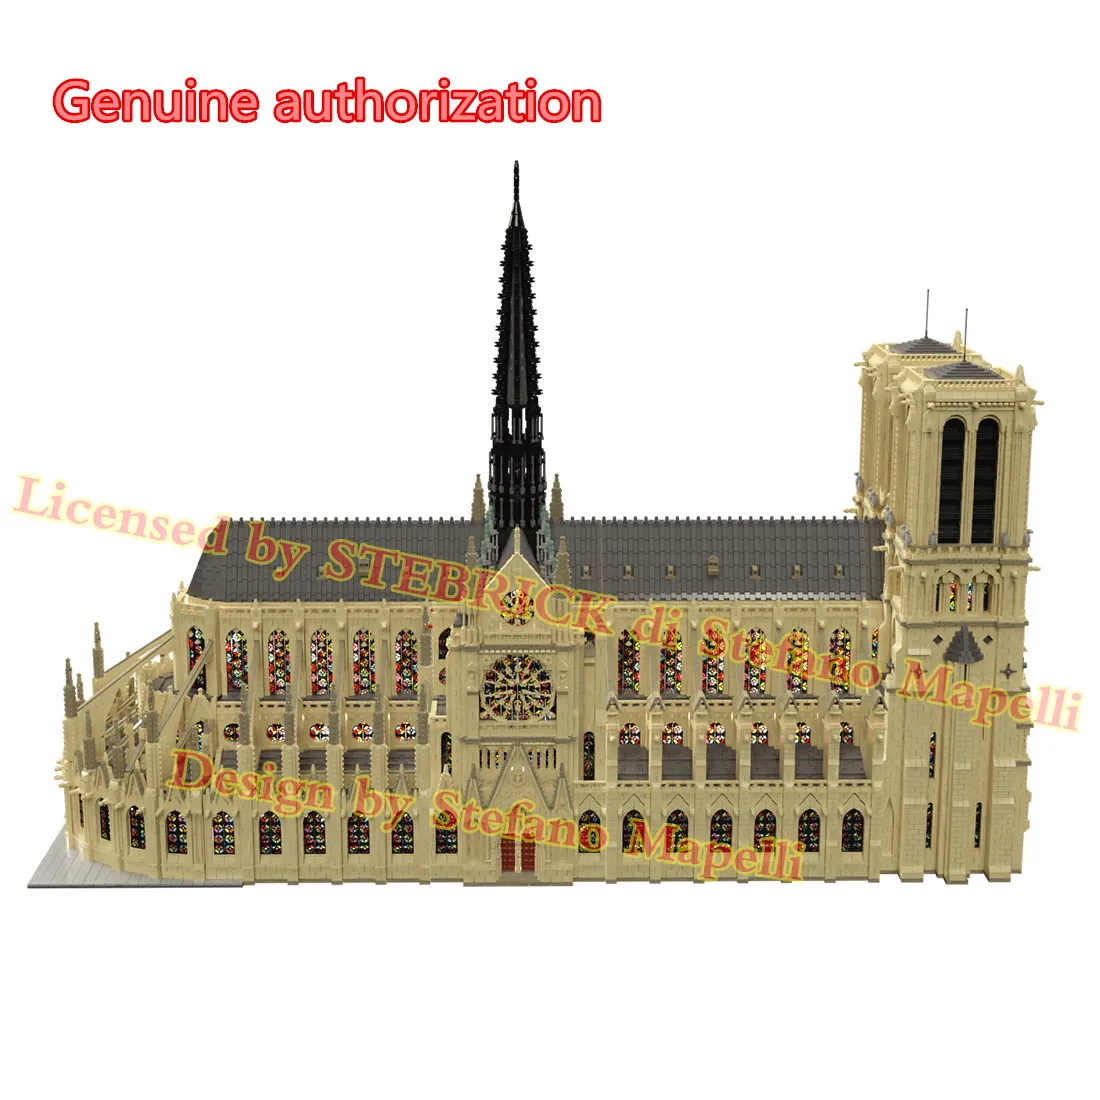 

(Design by Stefano Mapelli)63181Pcs Genuine Authorization MOC-43974 Notre Dame De Paris Modular (Ship in 28 days))